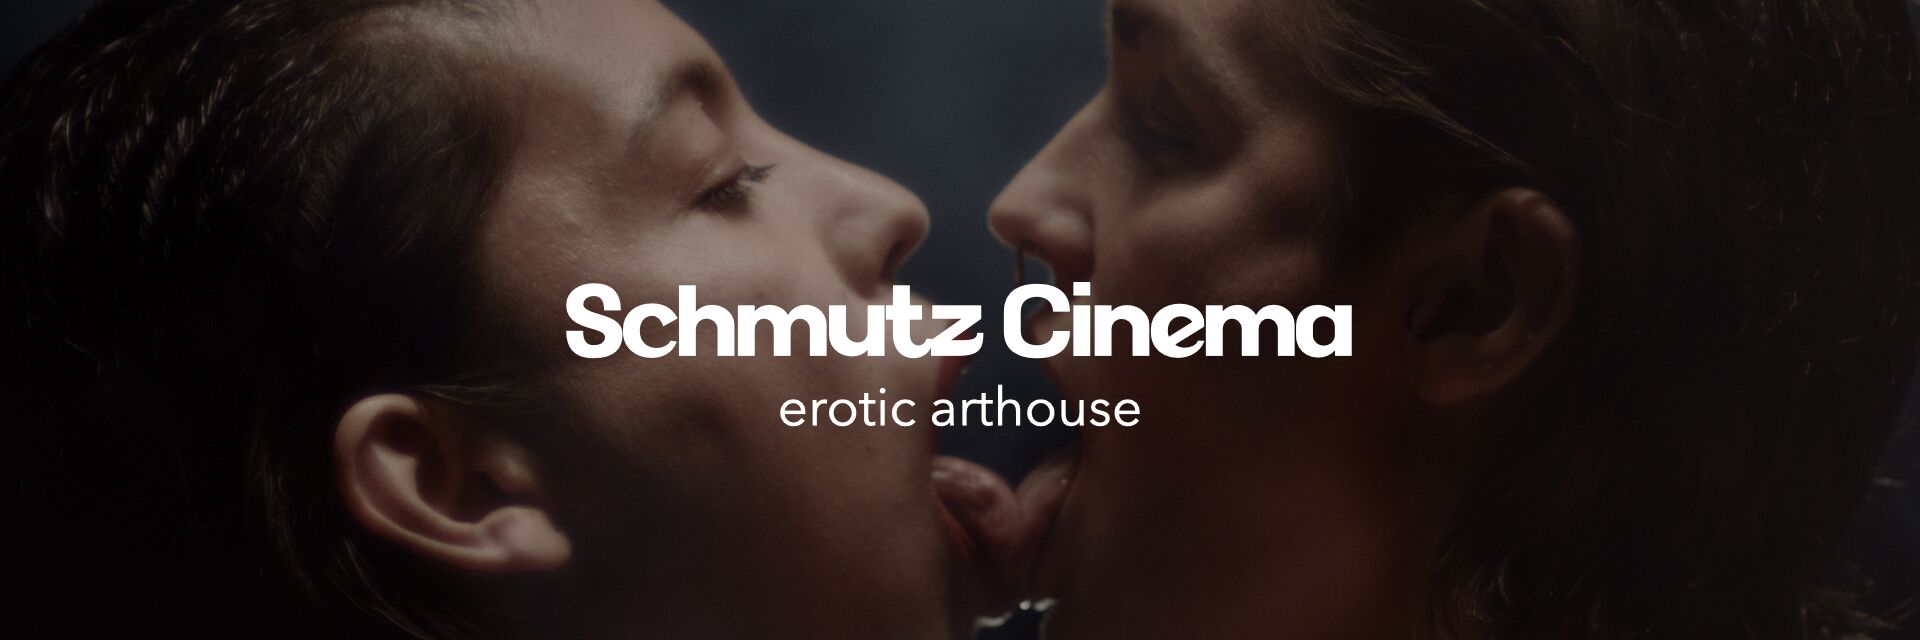 Schmutz Cinema